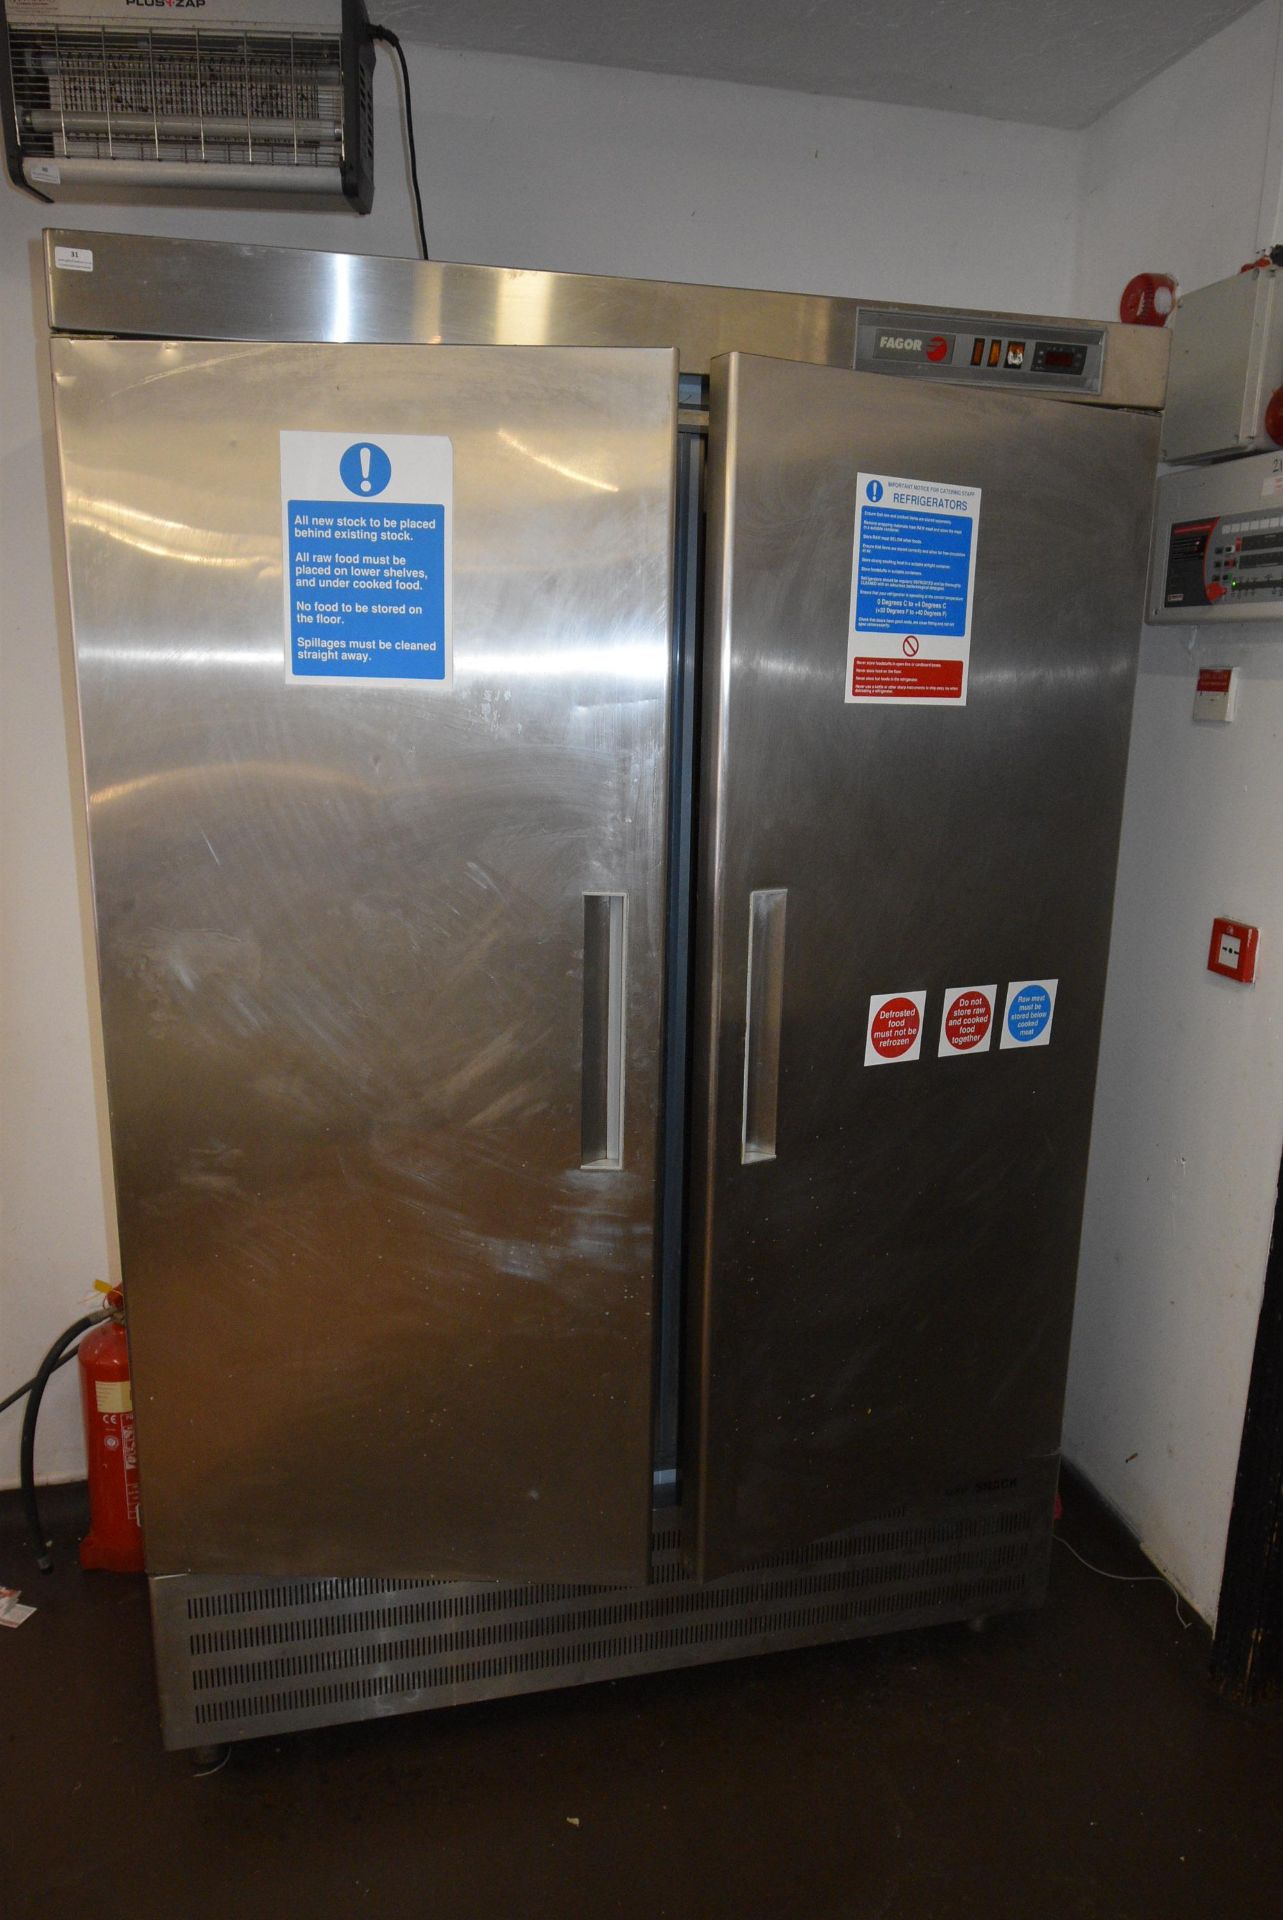 Fagor Stainless Steel Double Door Refrigerator